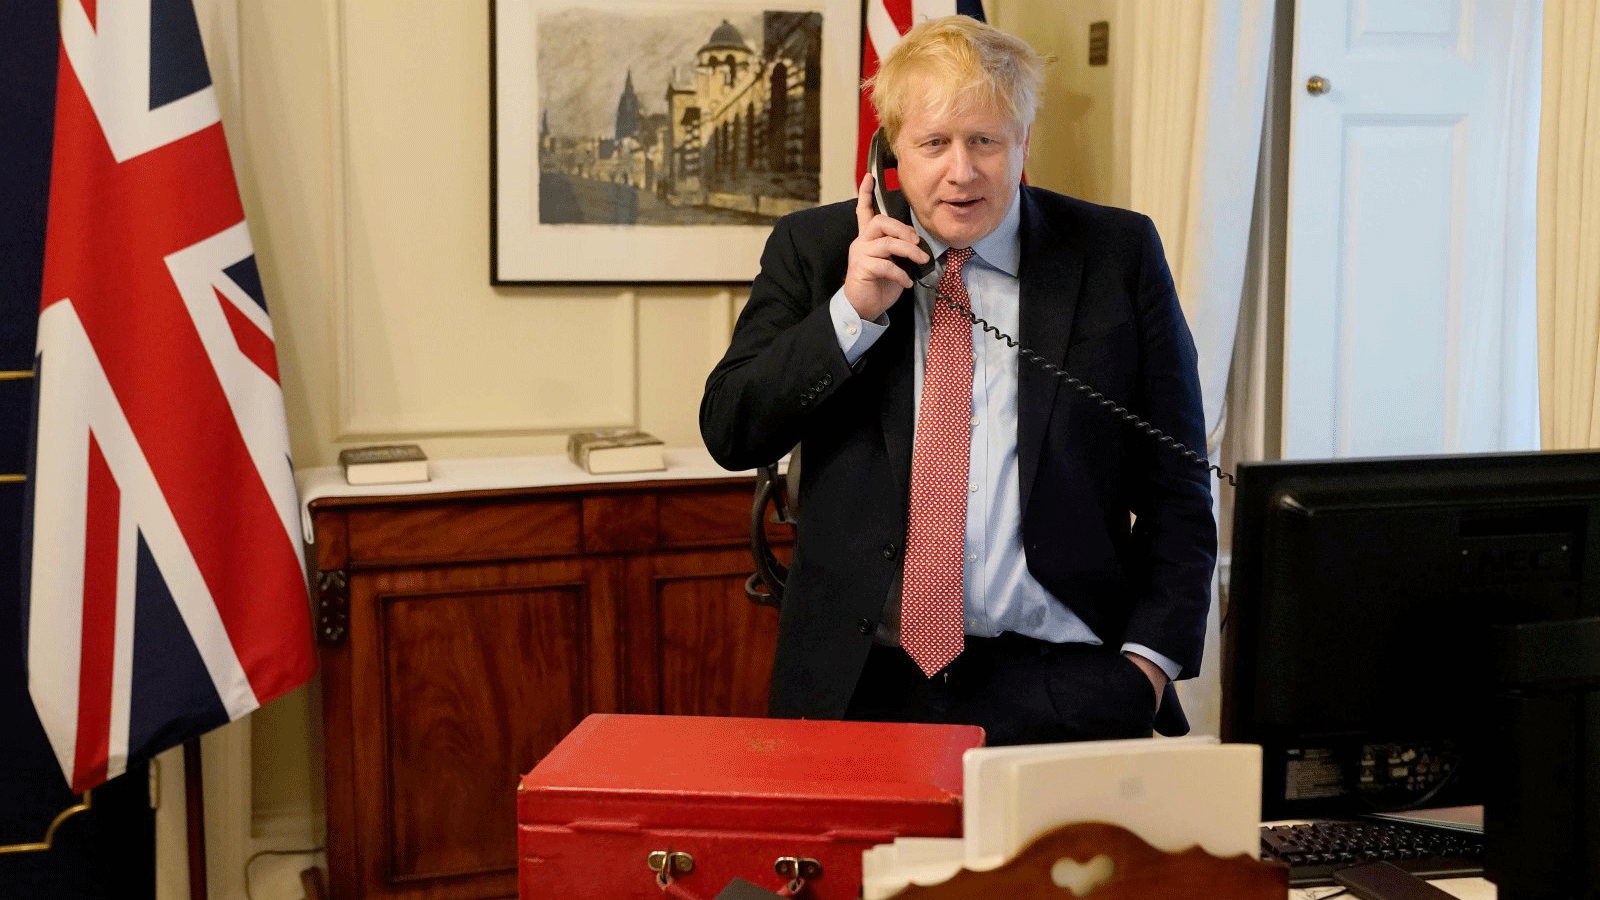 رئيس الوزراء البريطاني بوريس جونسون في حديثه الأسبوعي مع الملكة إليزابيث الثانية. في مكتبه في 10 داونينج ستريت، الأربعاء 25 آذار/ مارس 2020